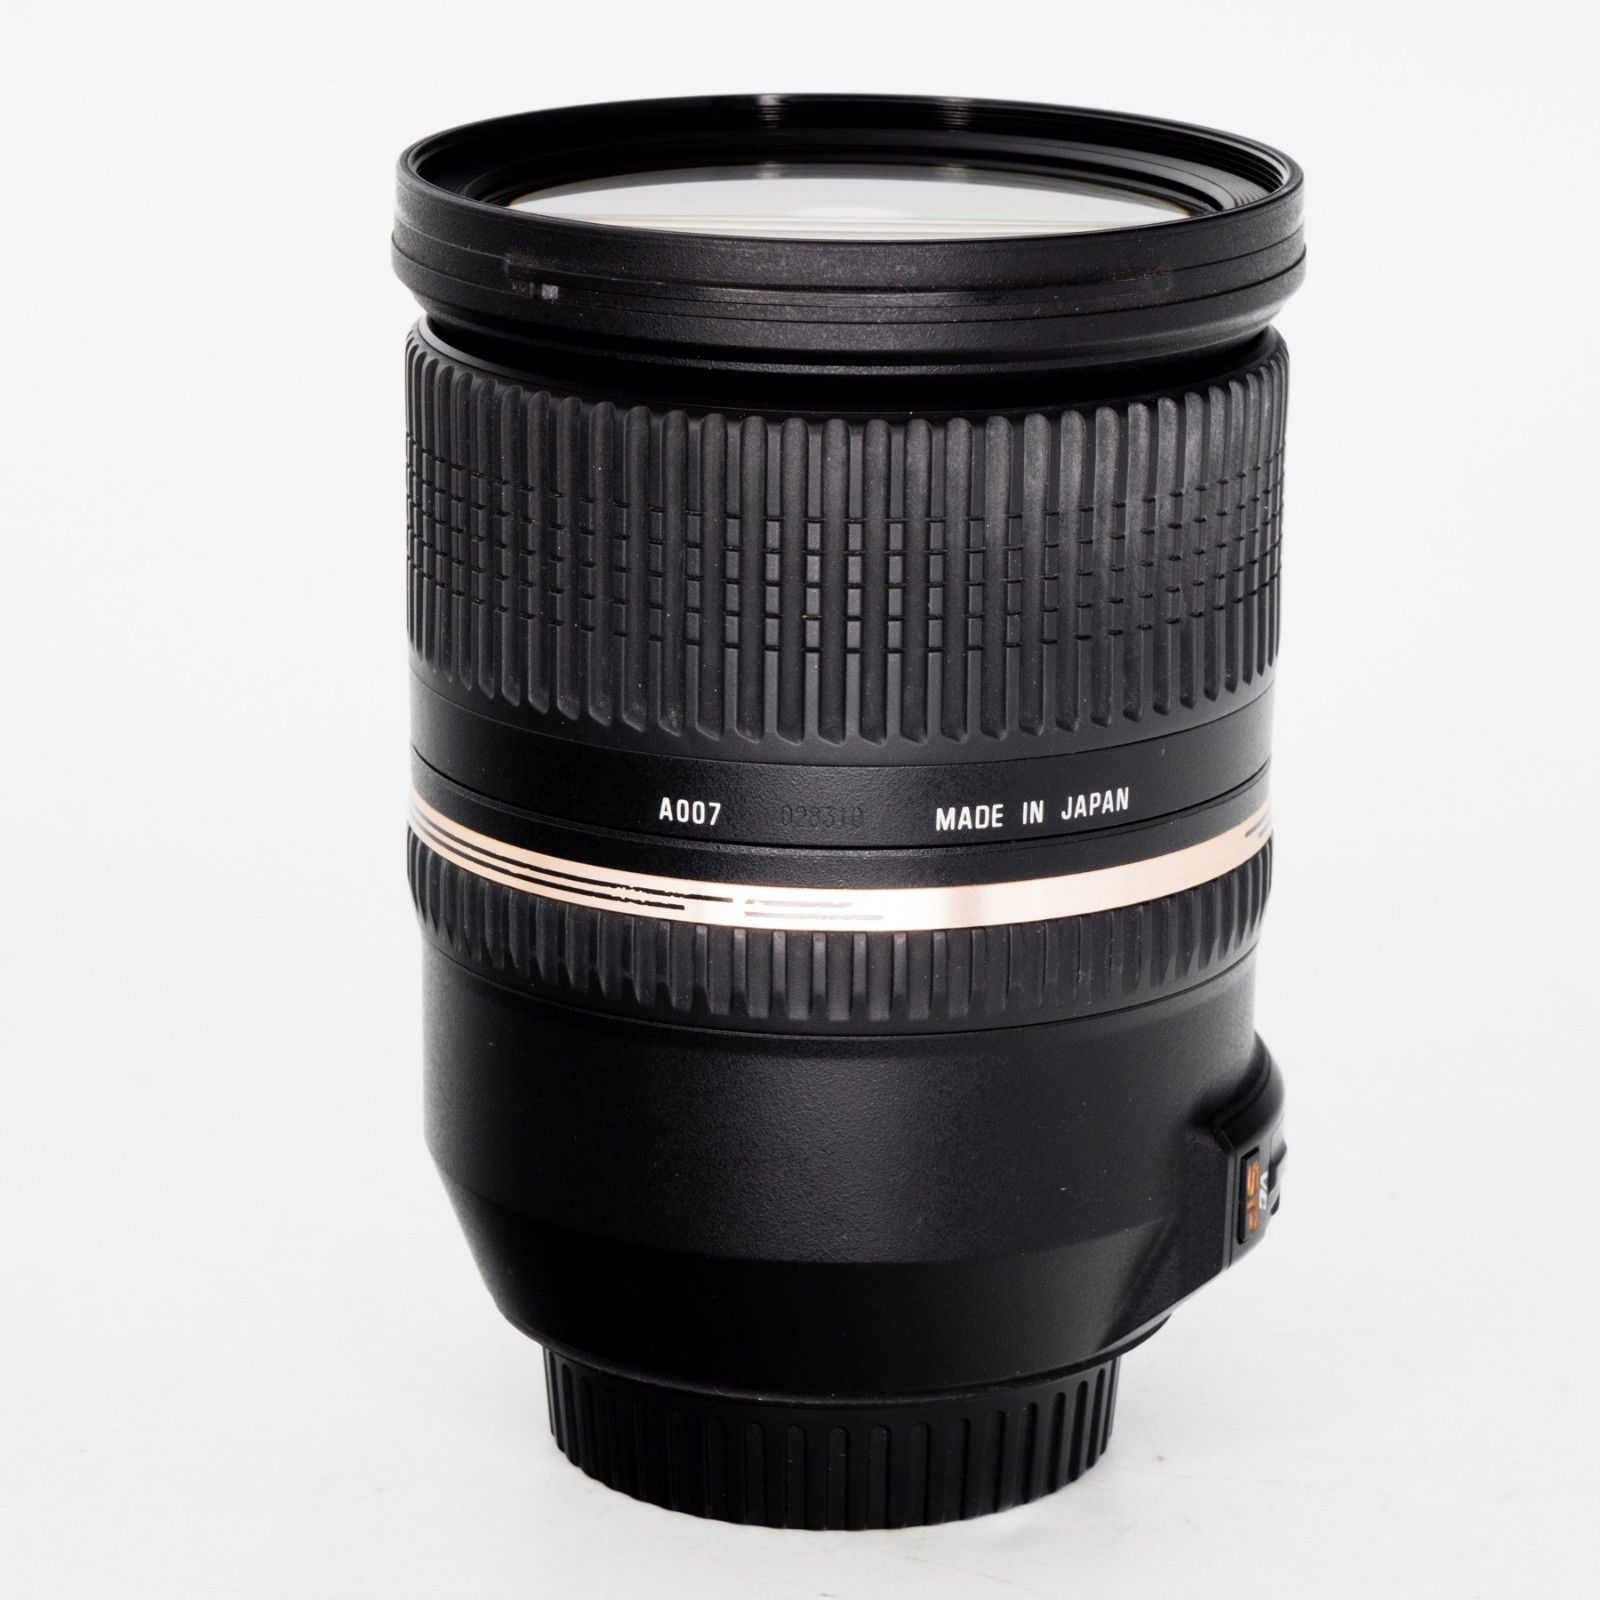 Tamron A007 SP 24-70mm f/2.8 DI VC USD Lens for Nikon F – JG 